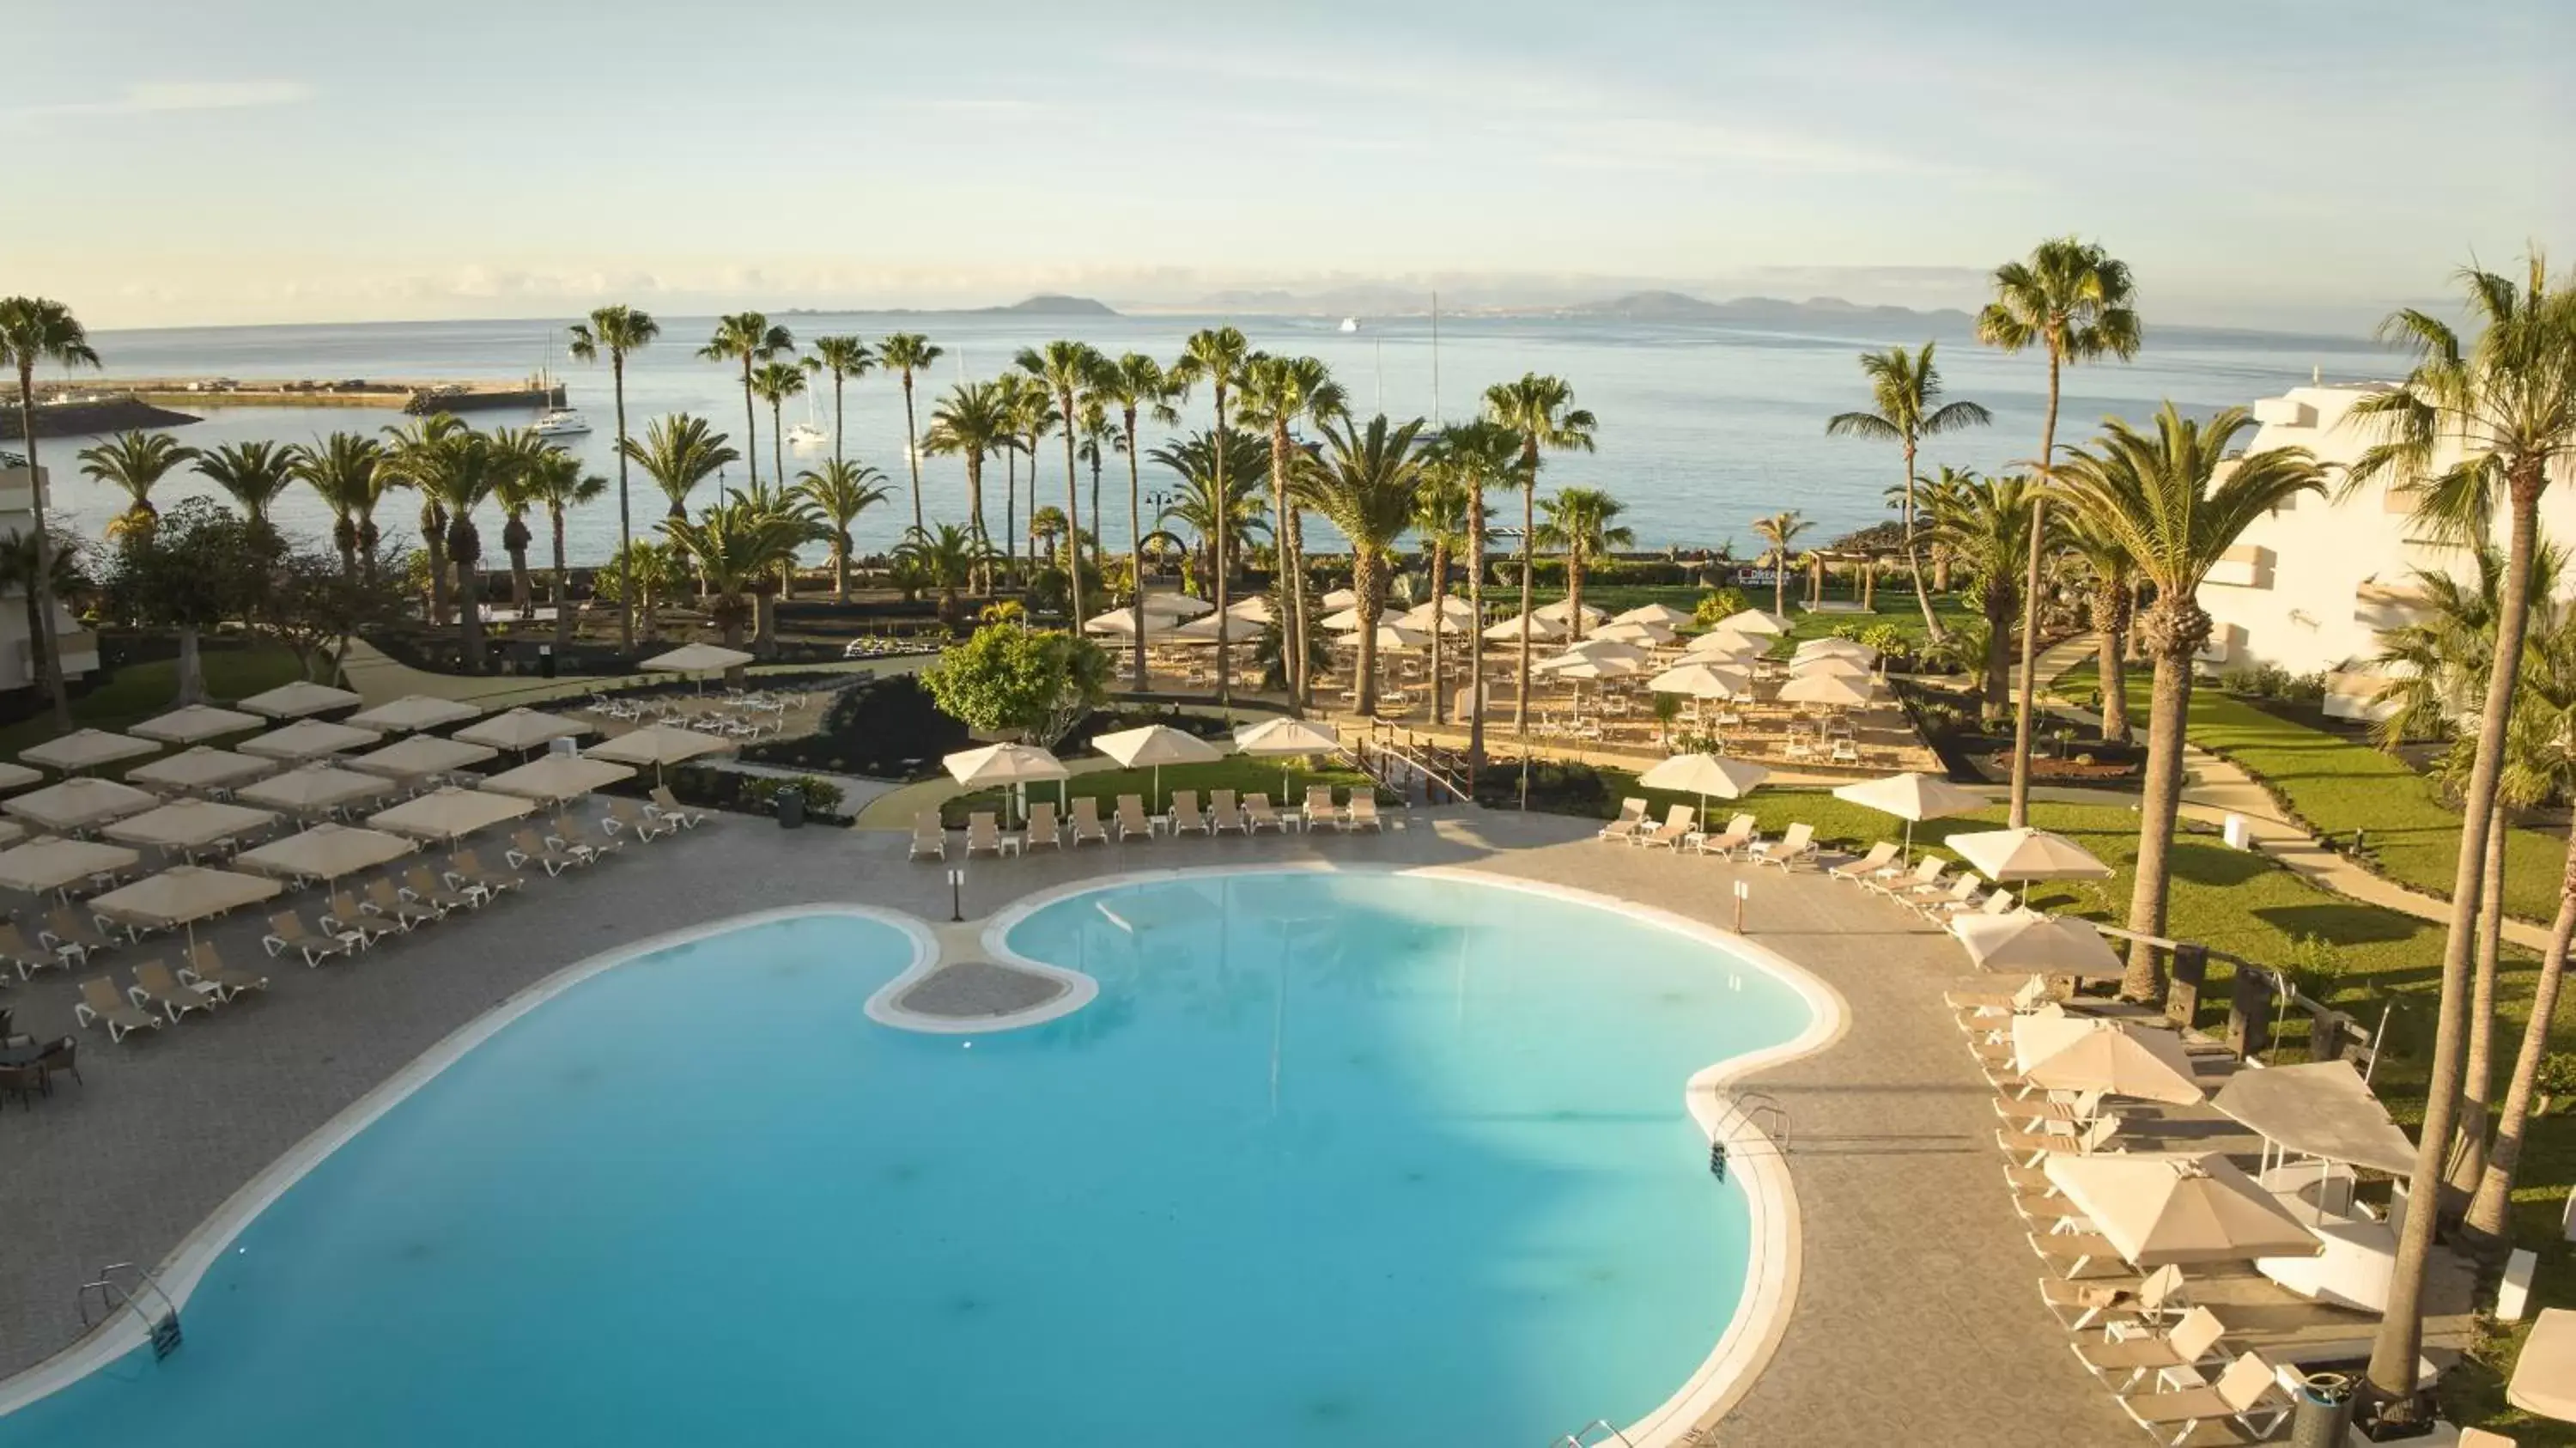 Pool View in Dreams Lanzarote Playa Dorada Resort & Spa